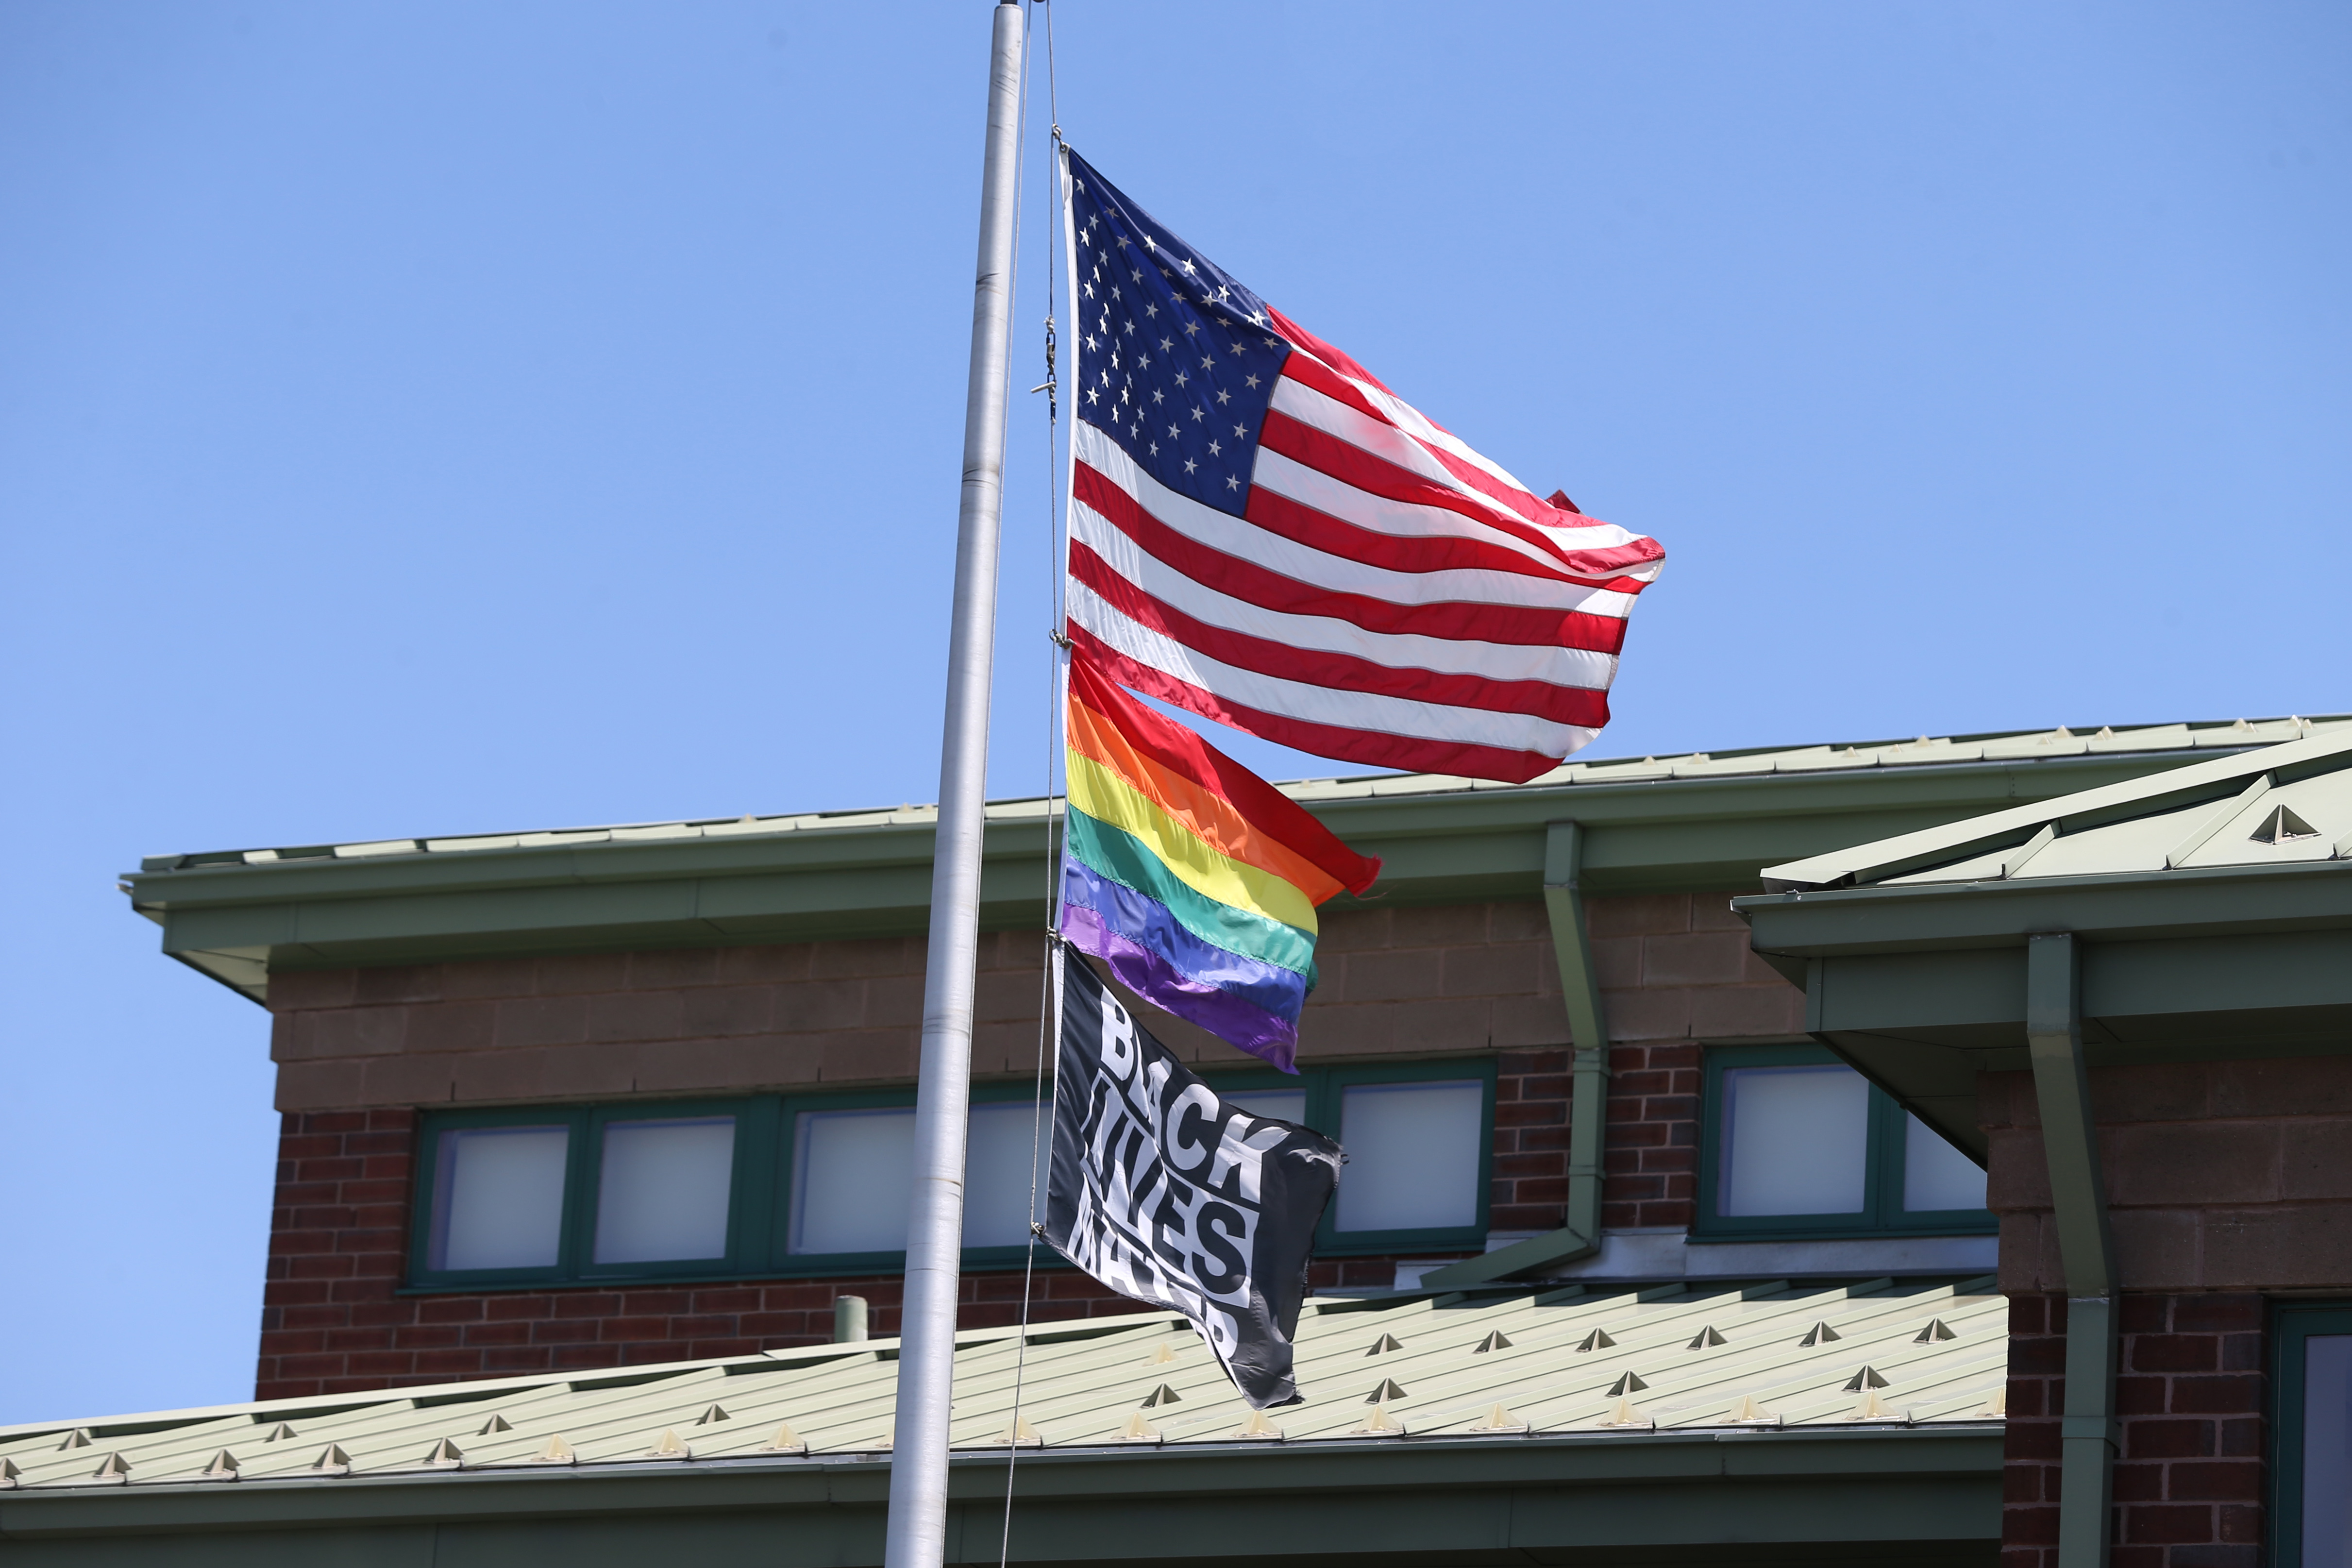 Voters in a California beach town approve an LGBTQ Pride flag ban